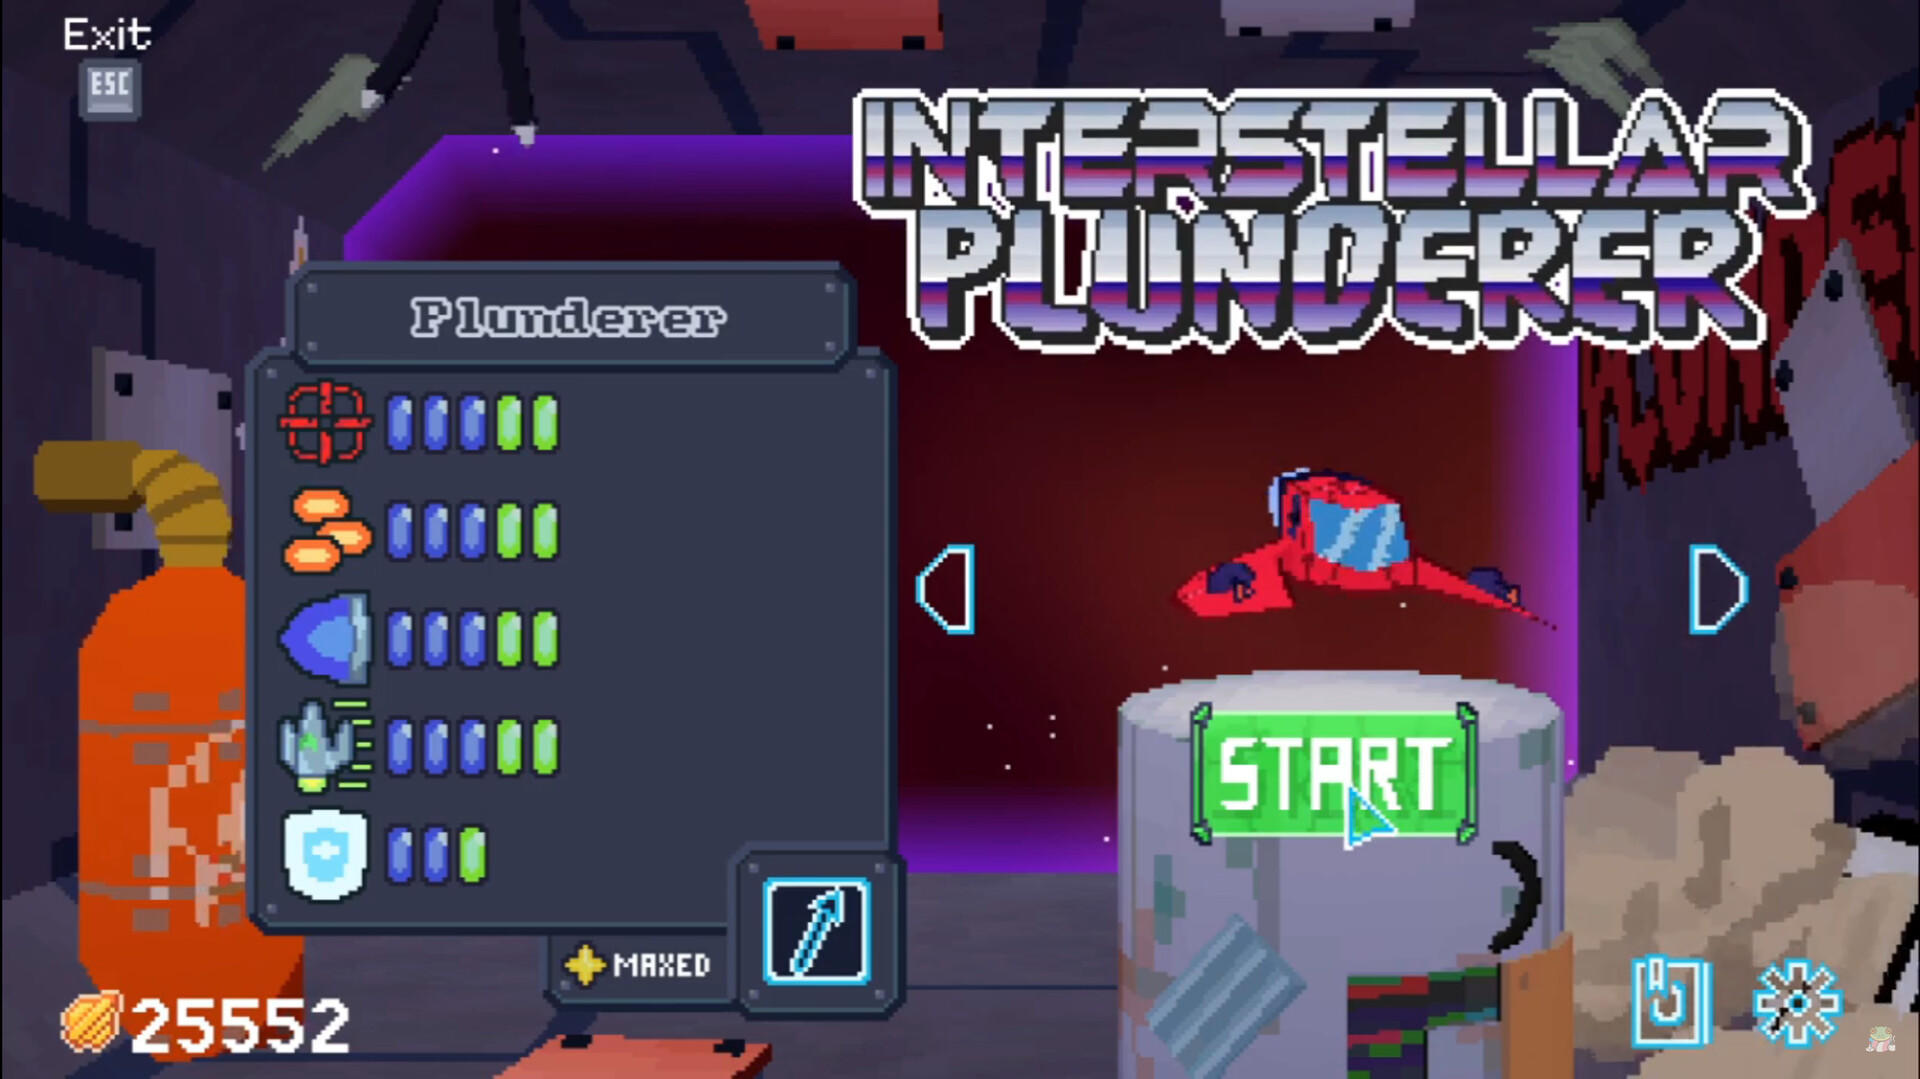 Interstellar Plunderer 게임 스크린 샷